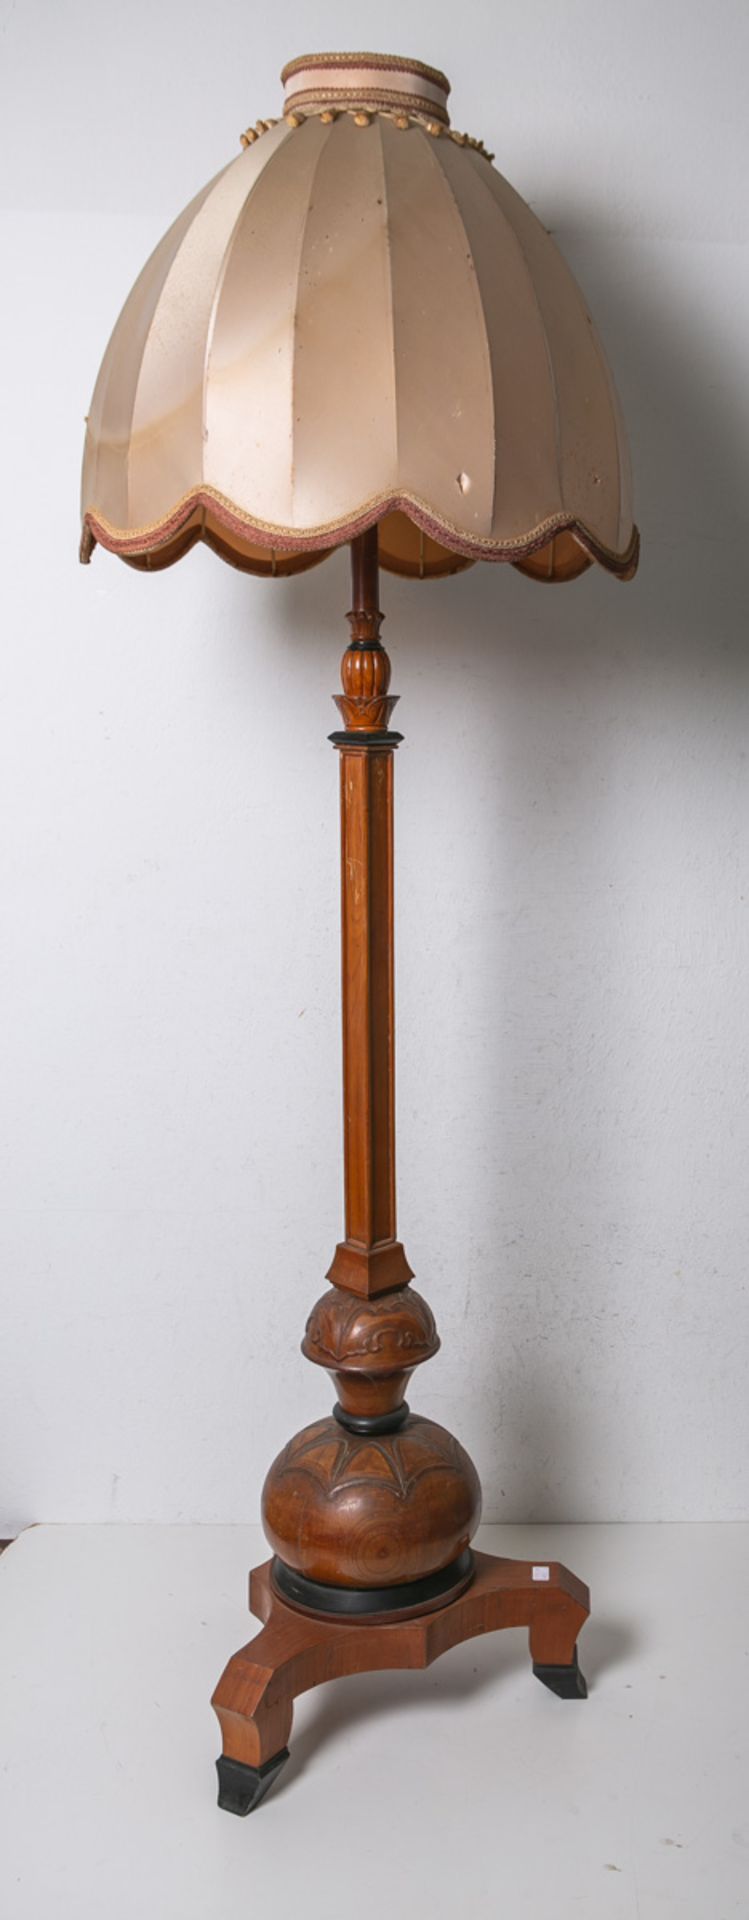 Stehlampe im Stil des Art déco (1920/30er Jahre) - Image 2 of 2